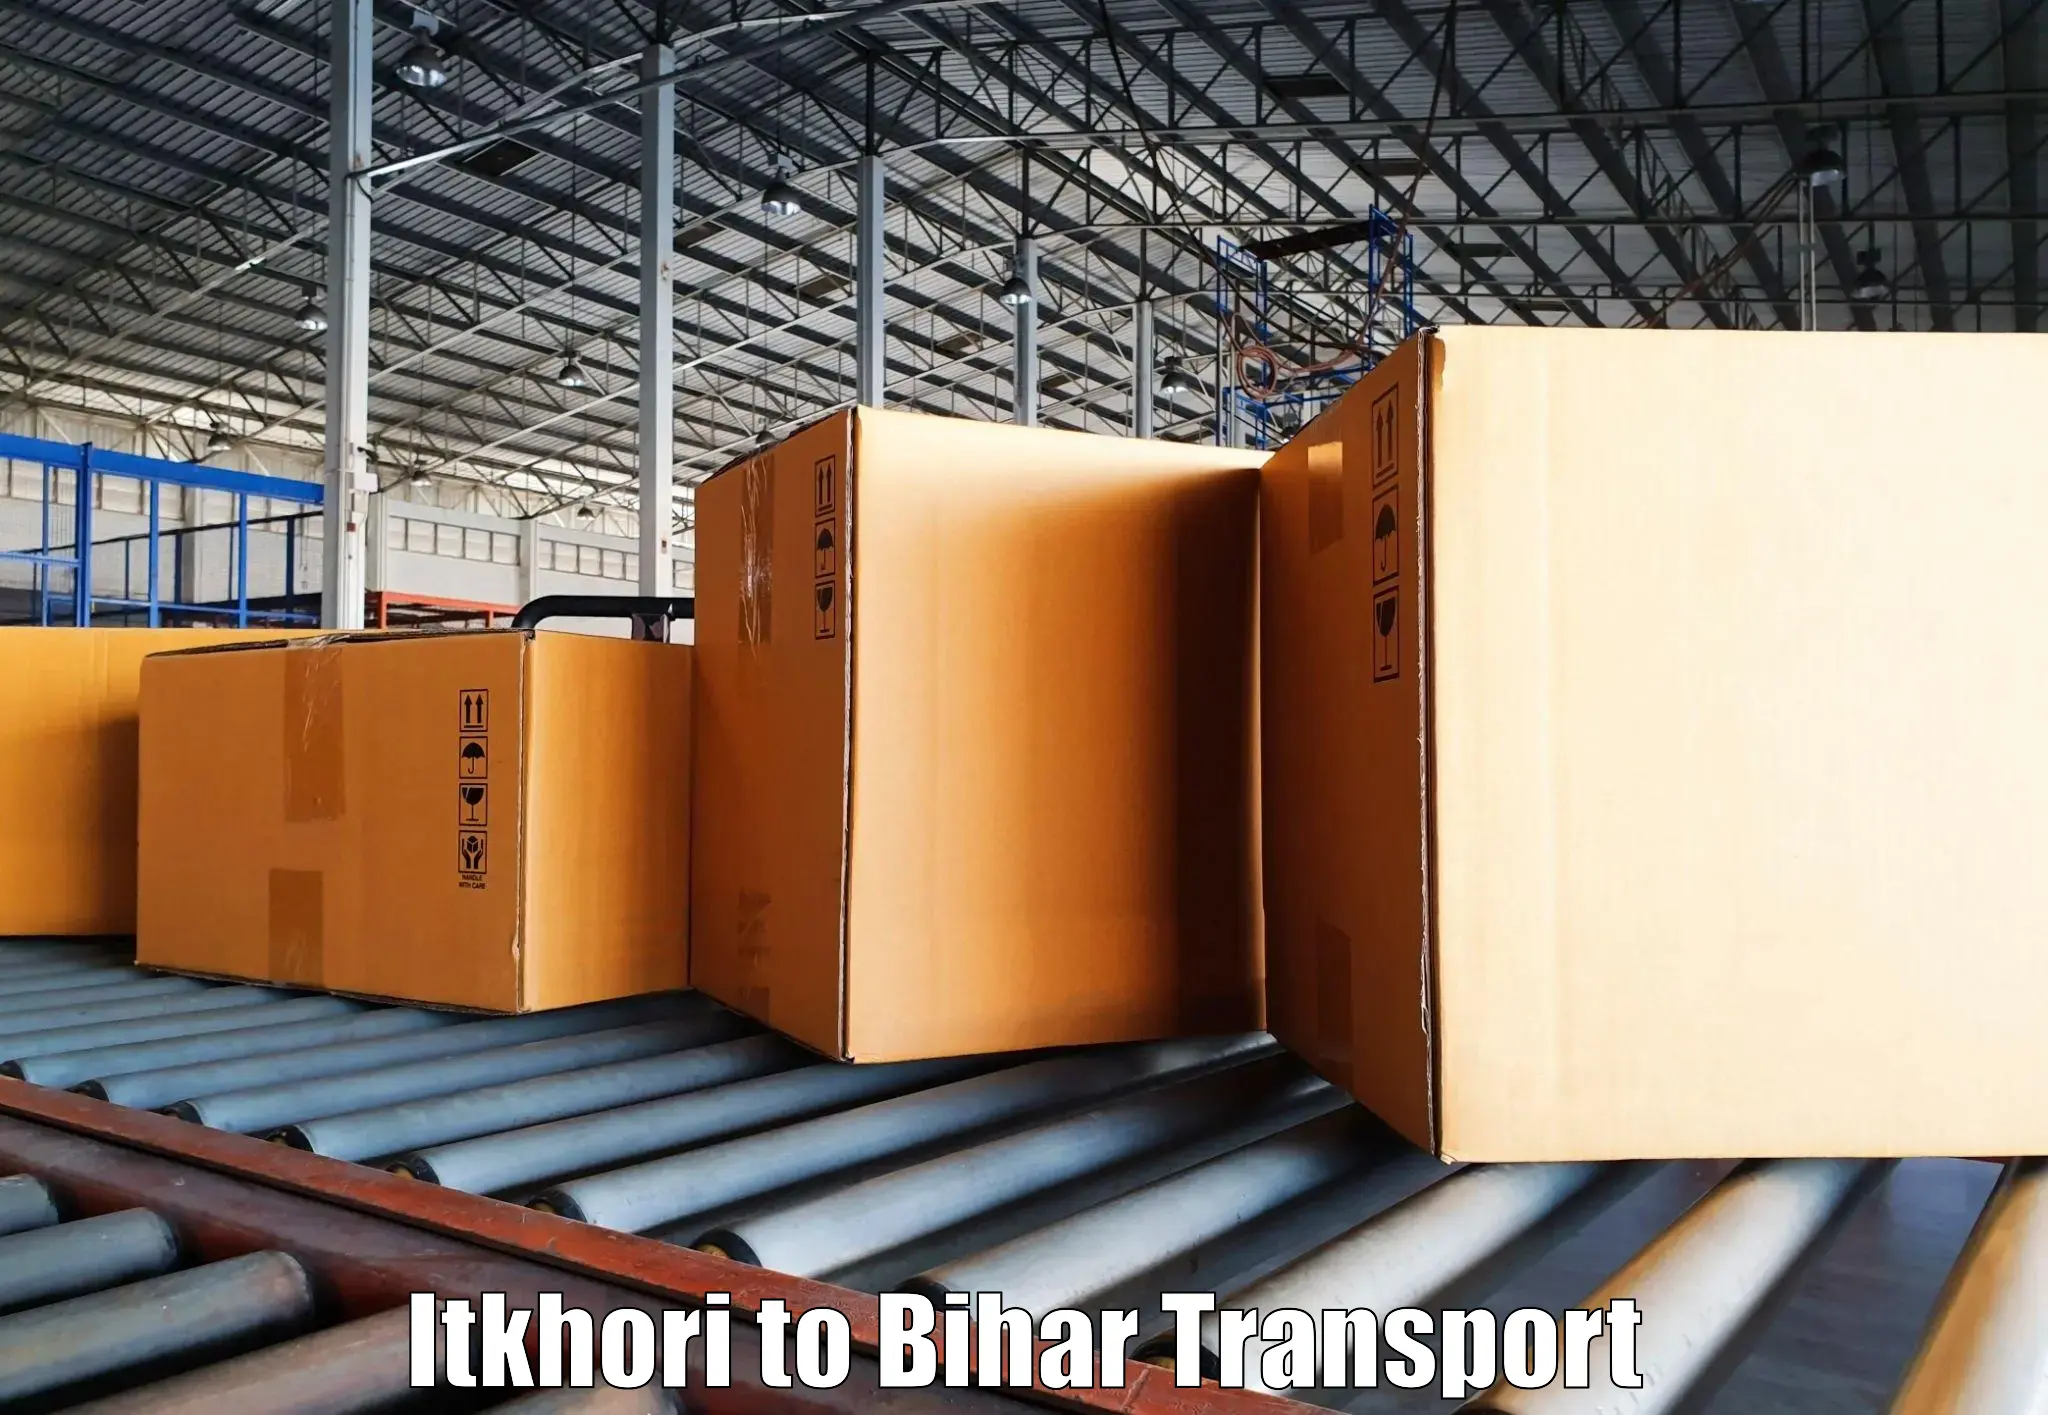 Nearest transport service Itkhori to Bihar